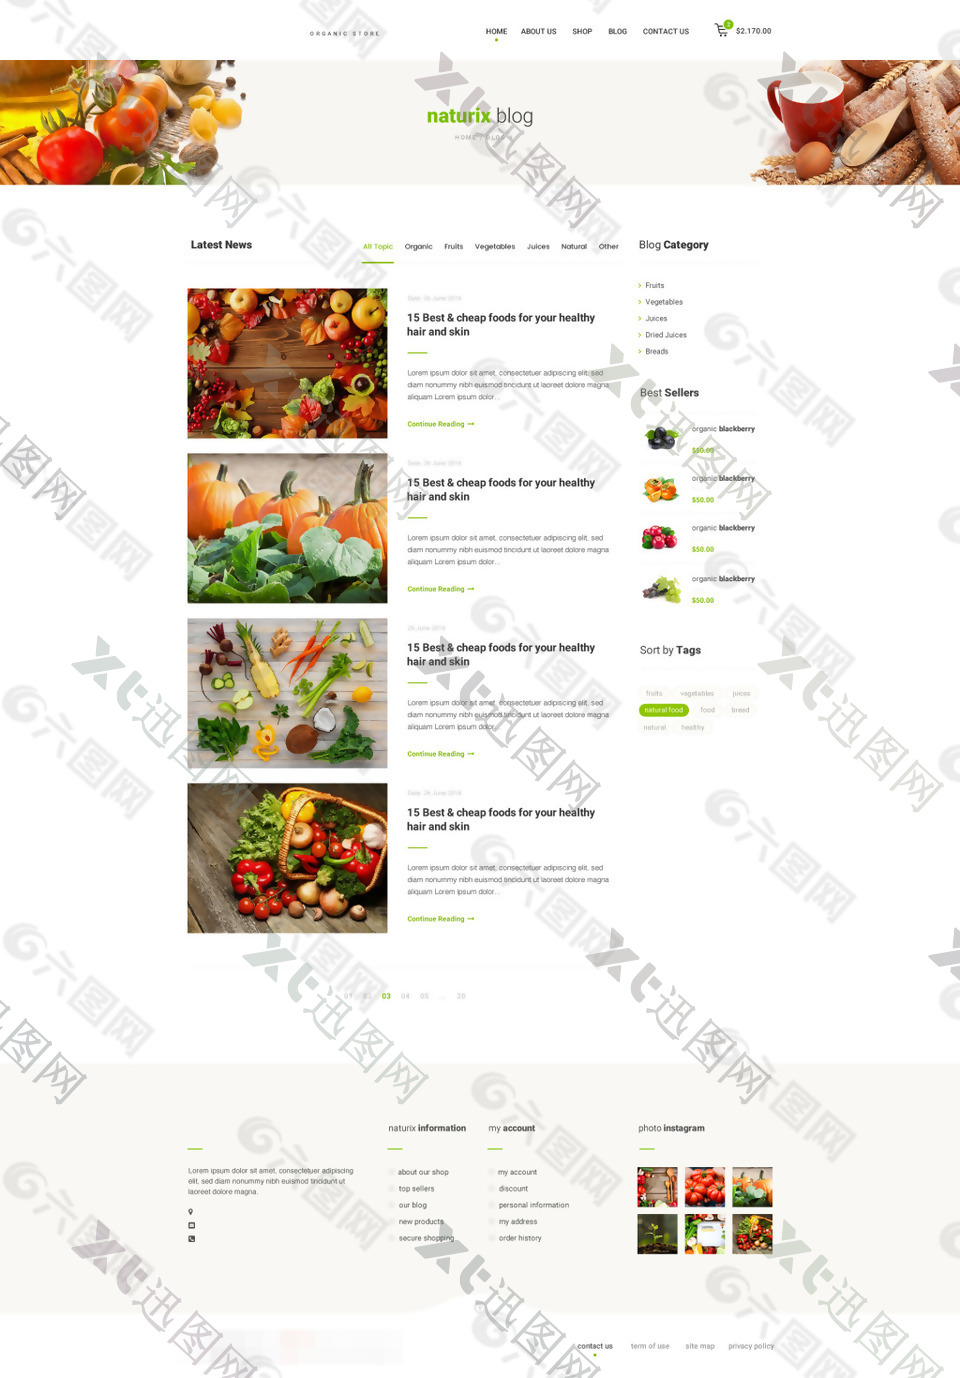 天然有机食品网站博客页面psd模板